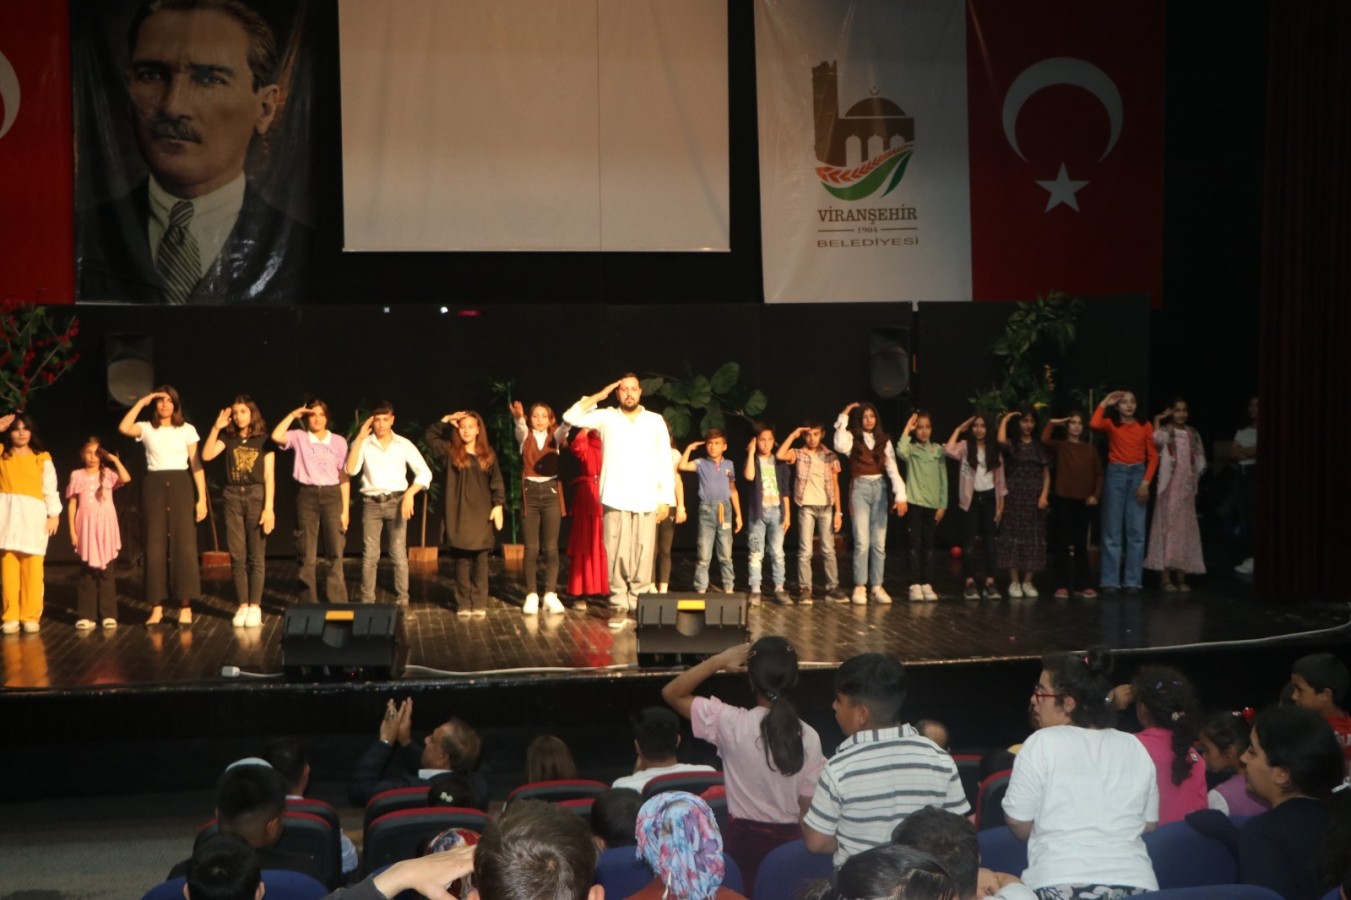 Viranşehir Belediyesi'nden "özel öğrencilere" tiyatro gösterisi;